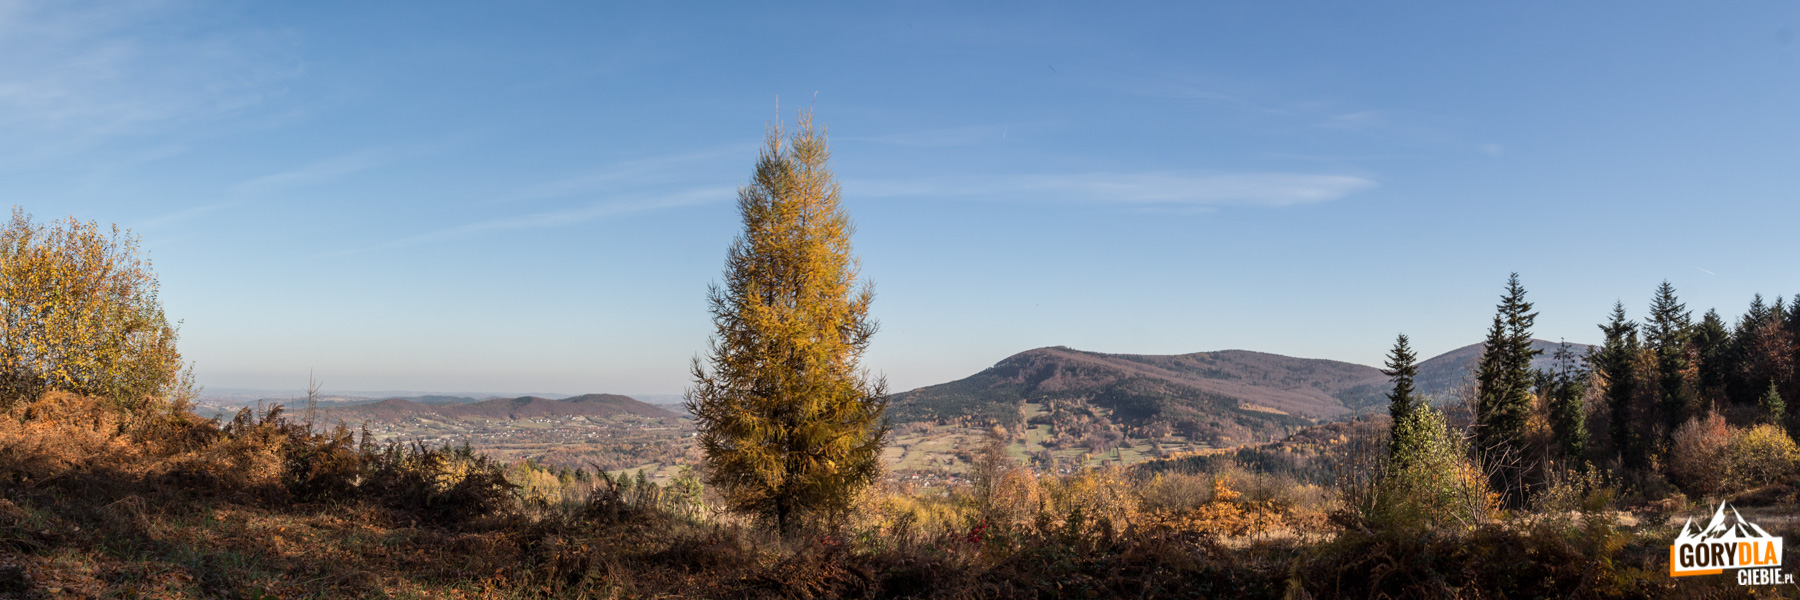 Z tej widokowej polanki zobaczymy ładną panoramą (od lewej) niżej położonego pasma Trupielca (475 m) i Glichowca (523 m) oraz grań Kamiennika i szczyt Łysiny